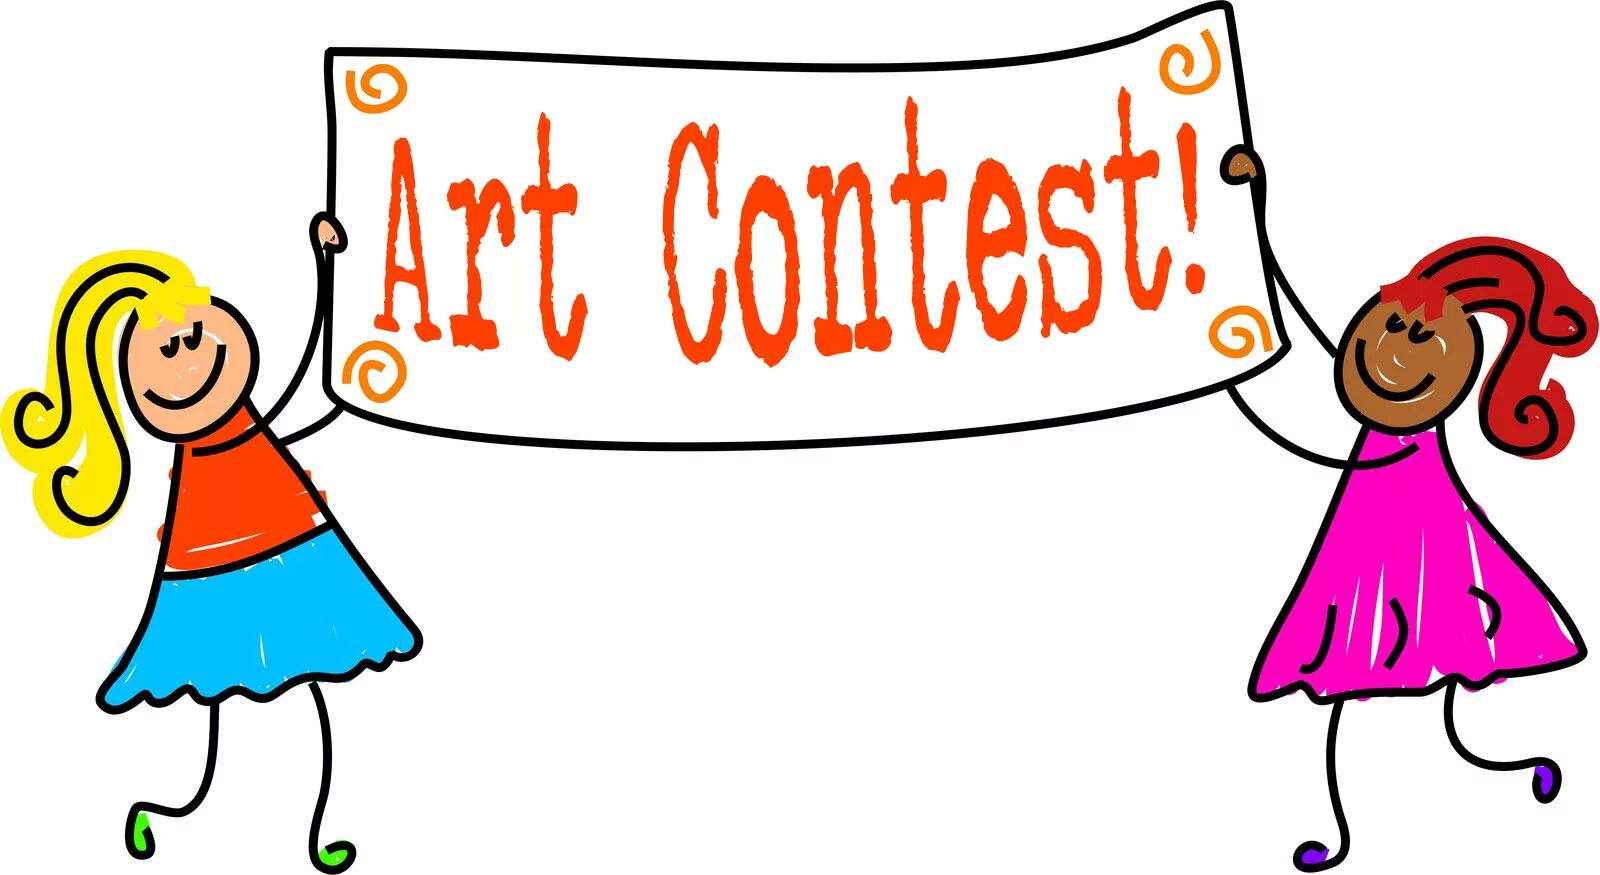 Английский язык paint. Рисунок Contest. English language Contest картинка. Иллюстрация английский язык Paint краска. Contests for Kids.